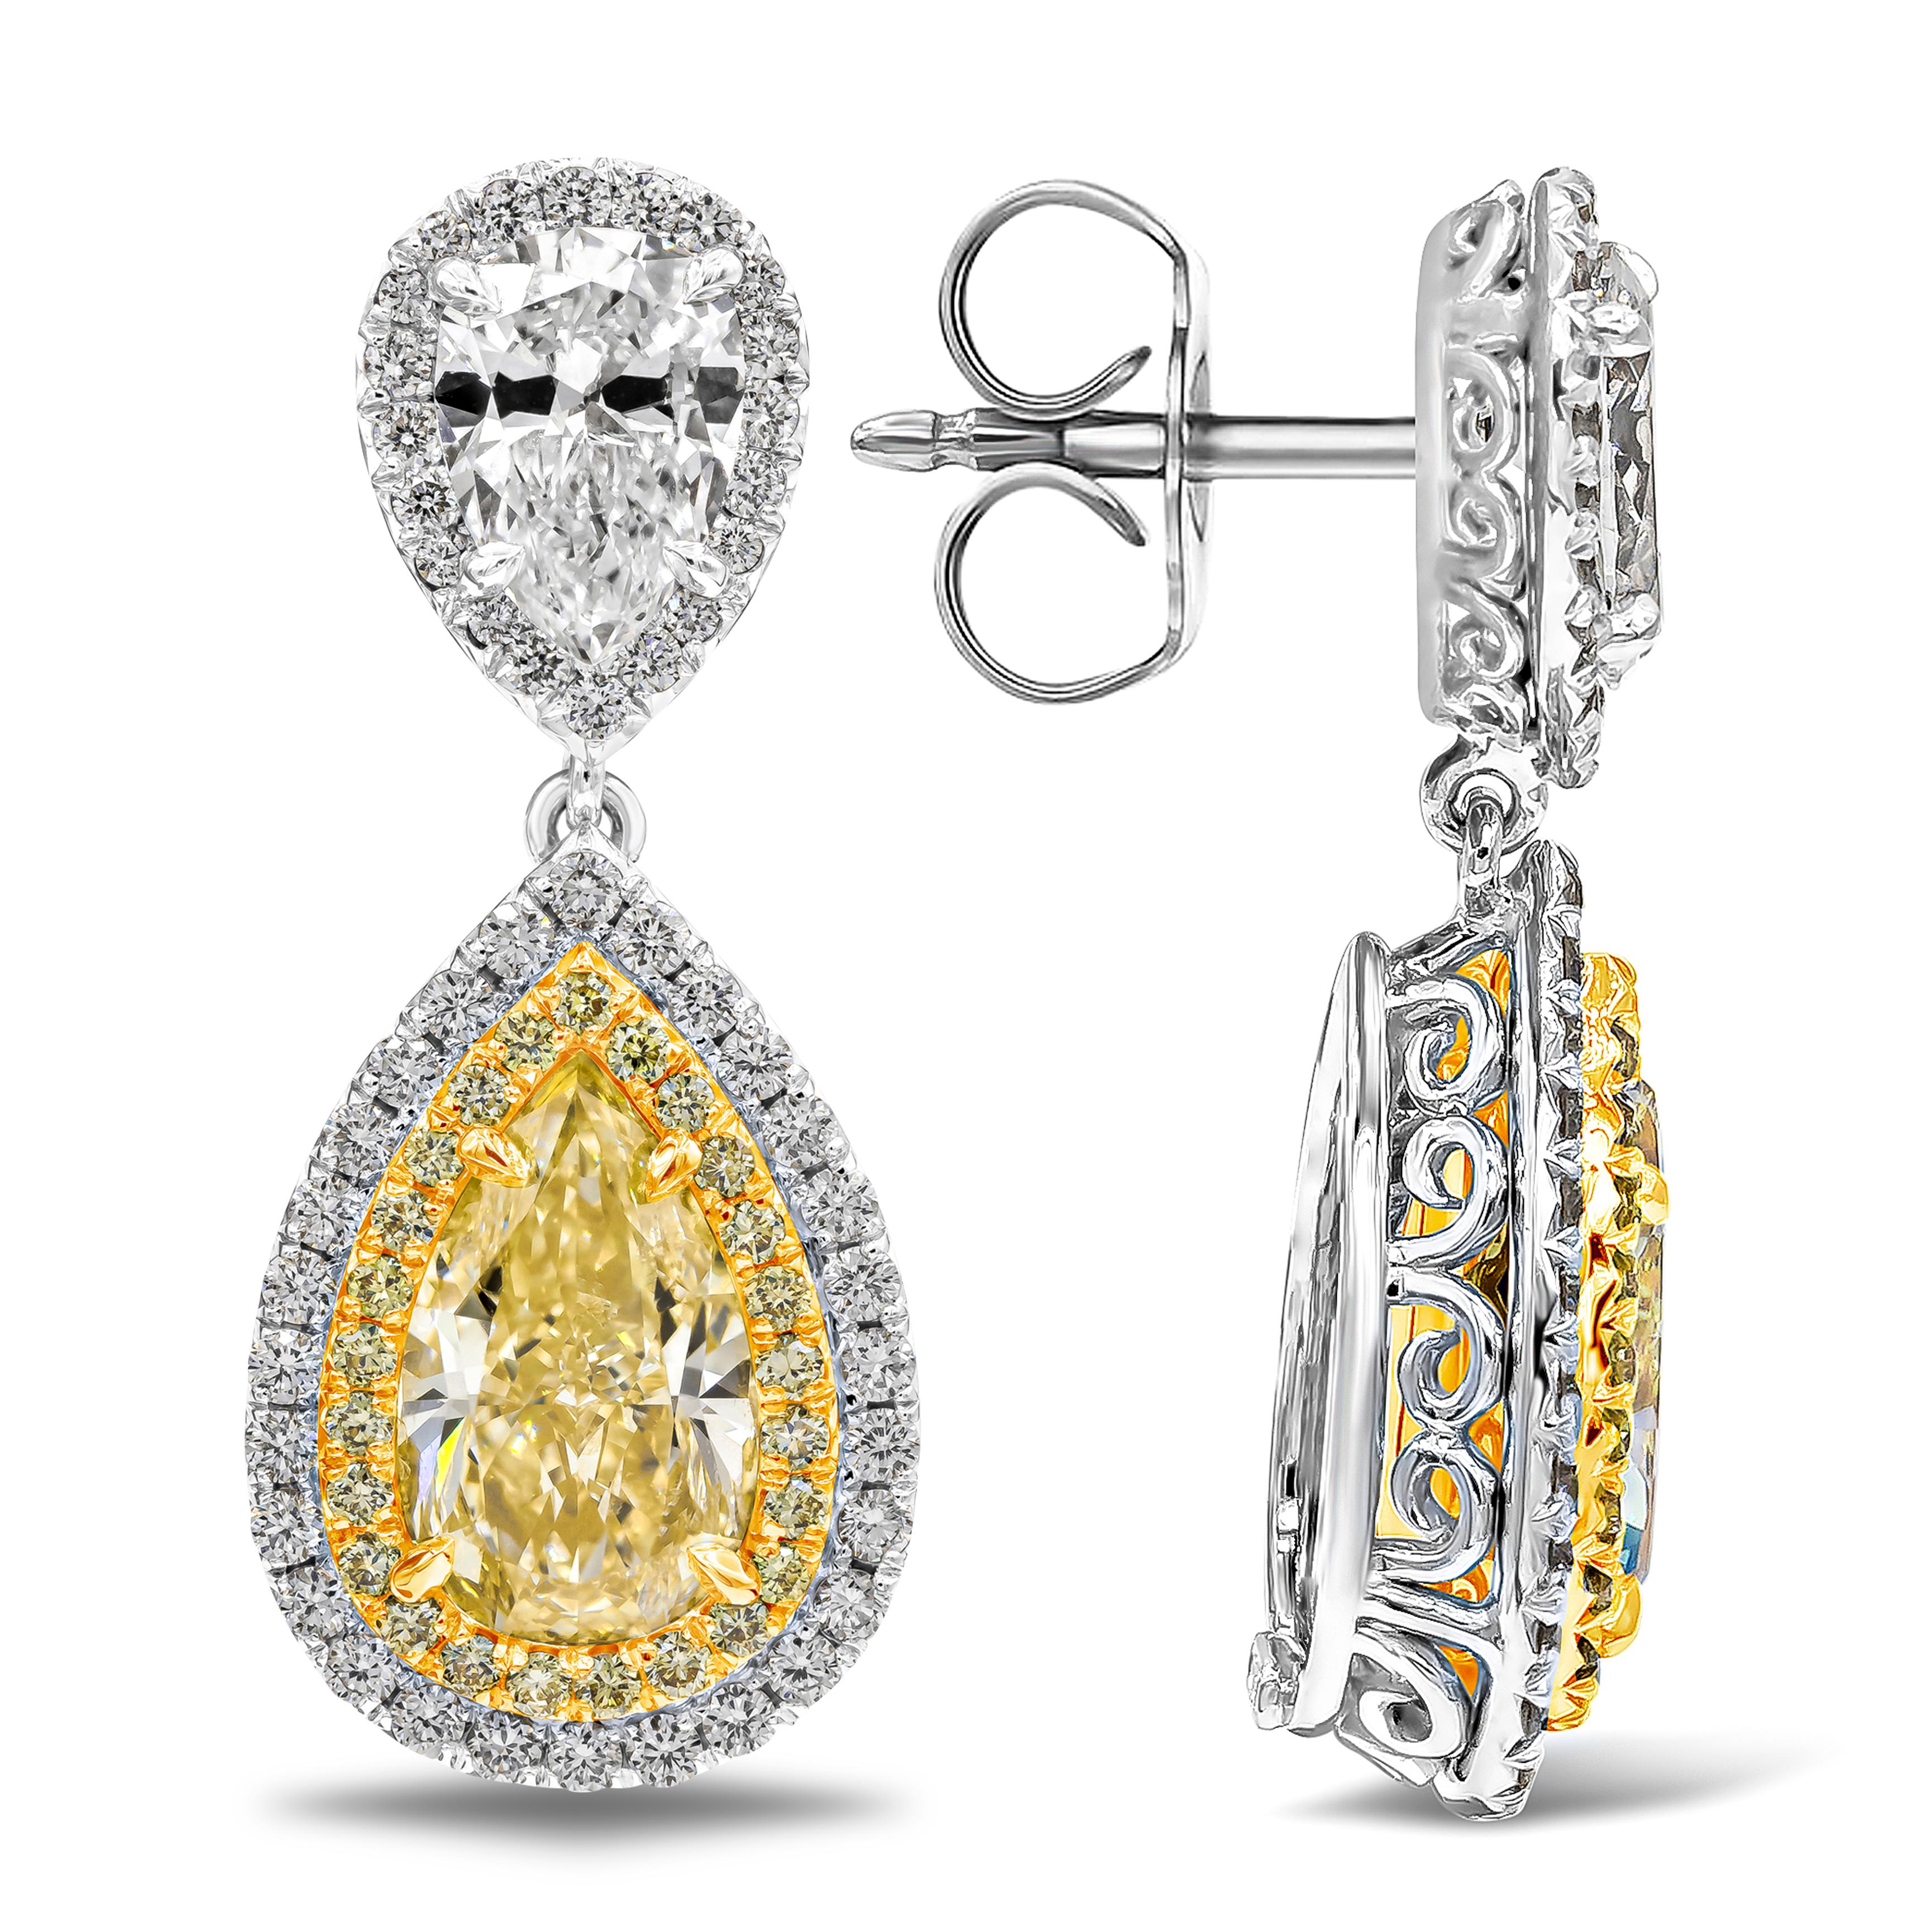 Elle met en valeur deux diamants jaunes en forme de poire pesant 2,13 et 2,06 carats environ, entourés de deux rangées de diamants ronds de taille brillant dans un design en halo. Suspendu à un diamant blanc de forme poire accentué par une rangée de